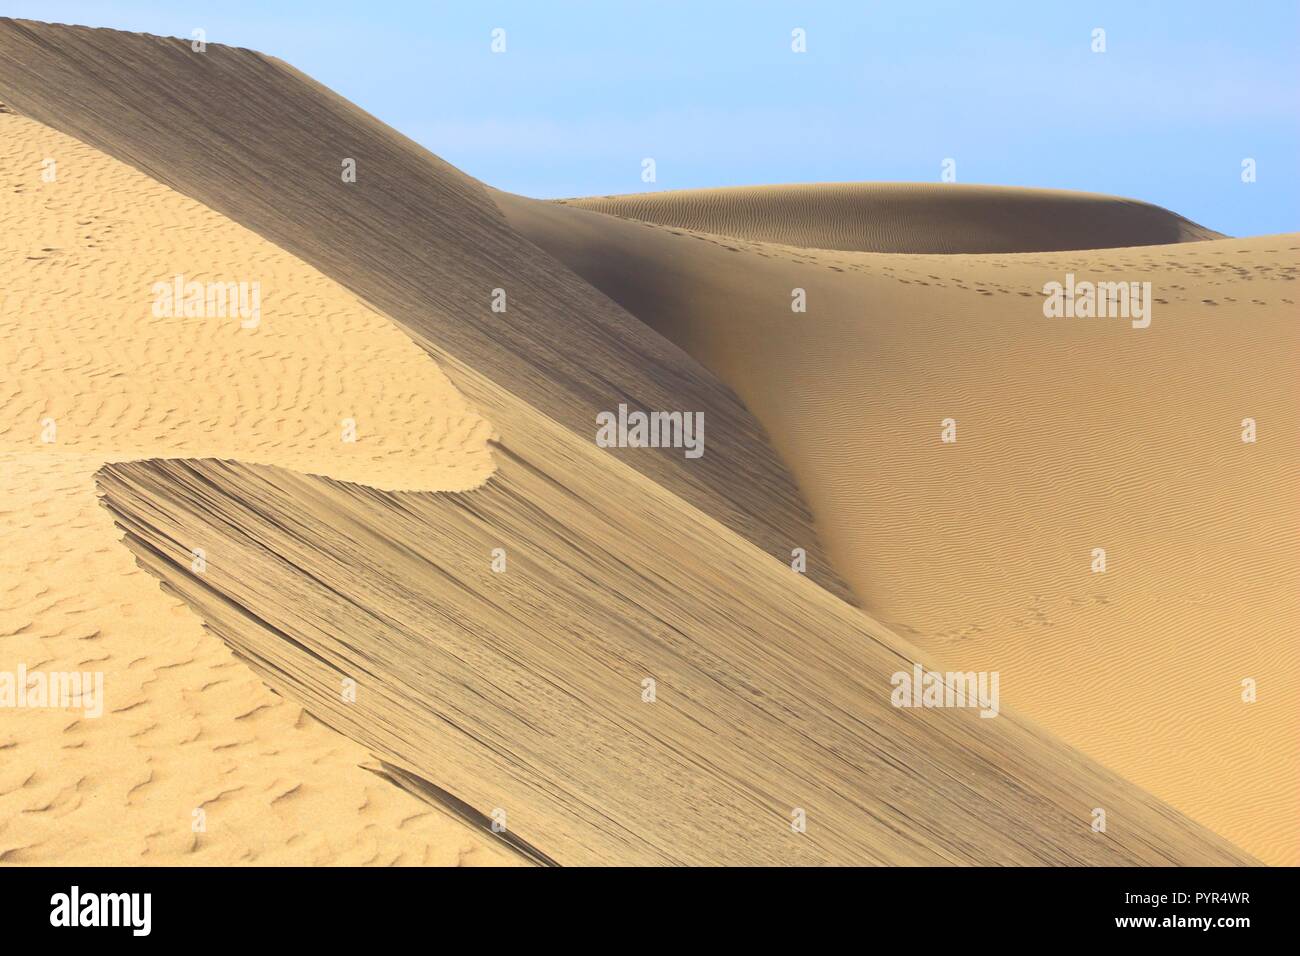 Gran Canaria - die Dünen von Maspalomas sand Wüstenlandschaft. Stockfoto